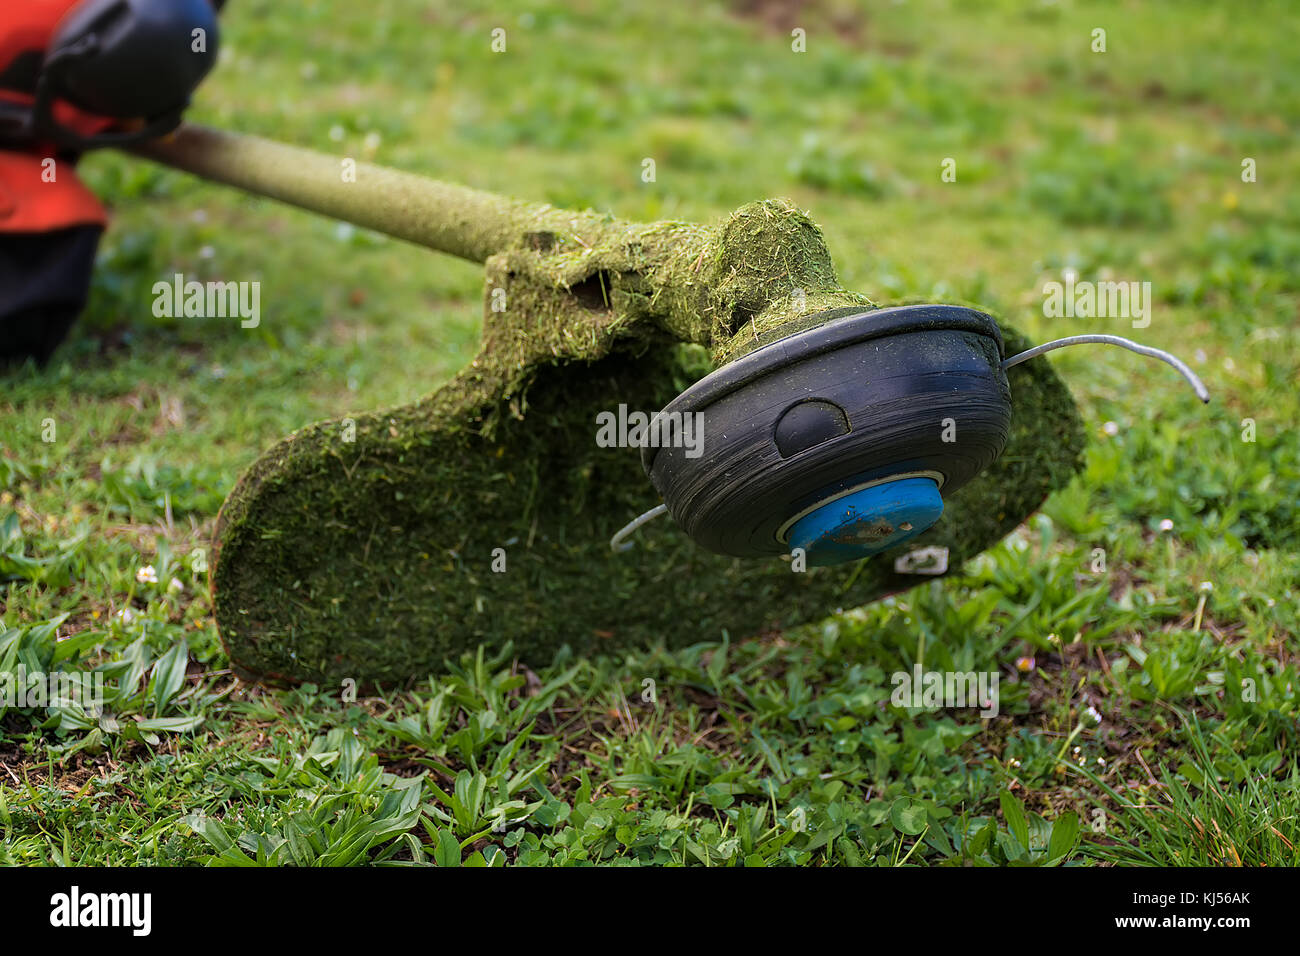 Grass cutter / brush cutter for trimming overgrown grass Stock Photo